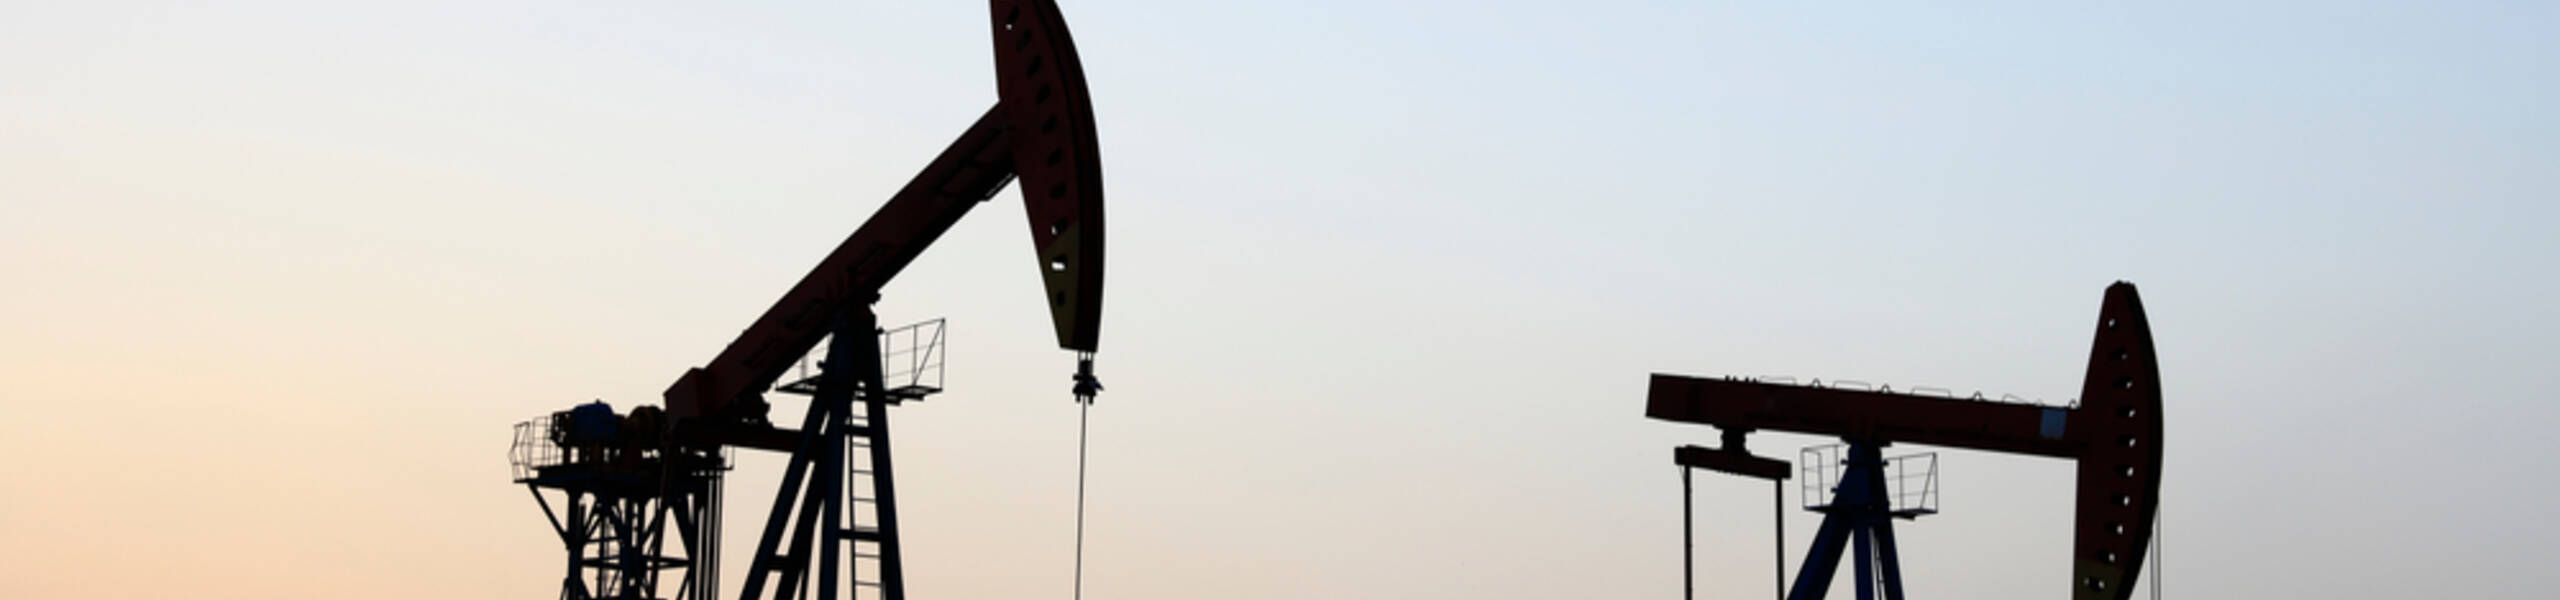 O que espera os preços do petróleo e do gás natural?